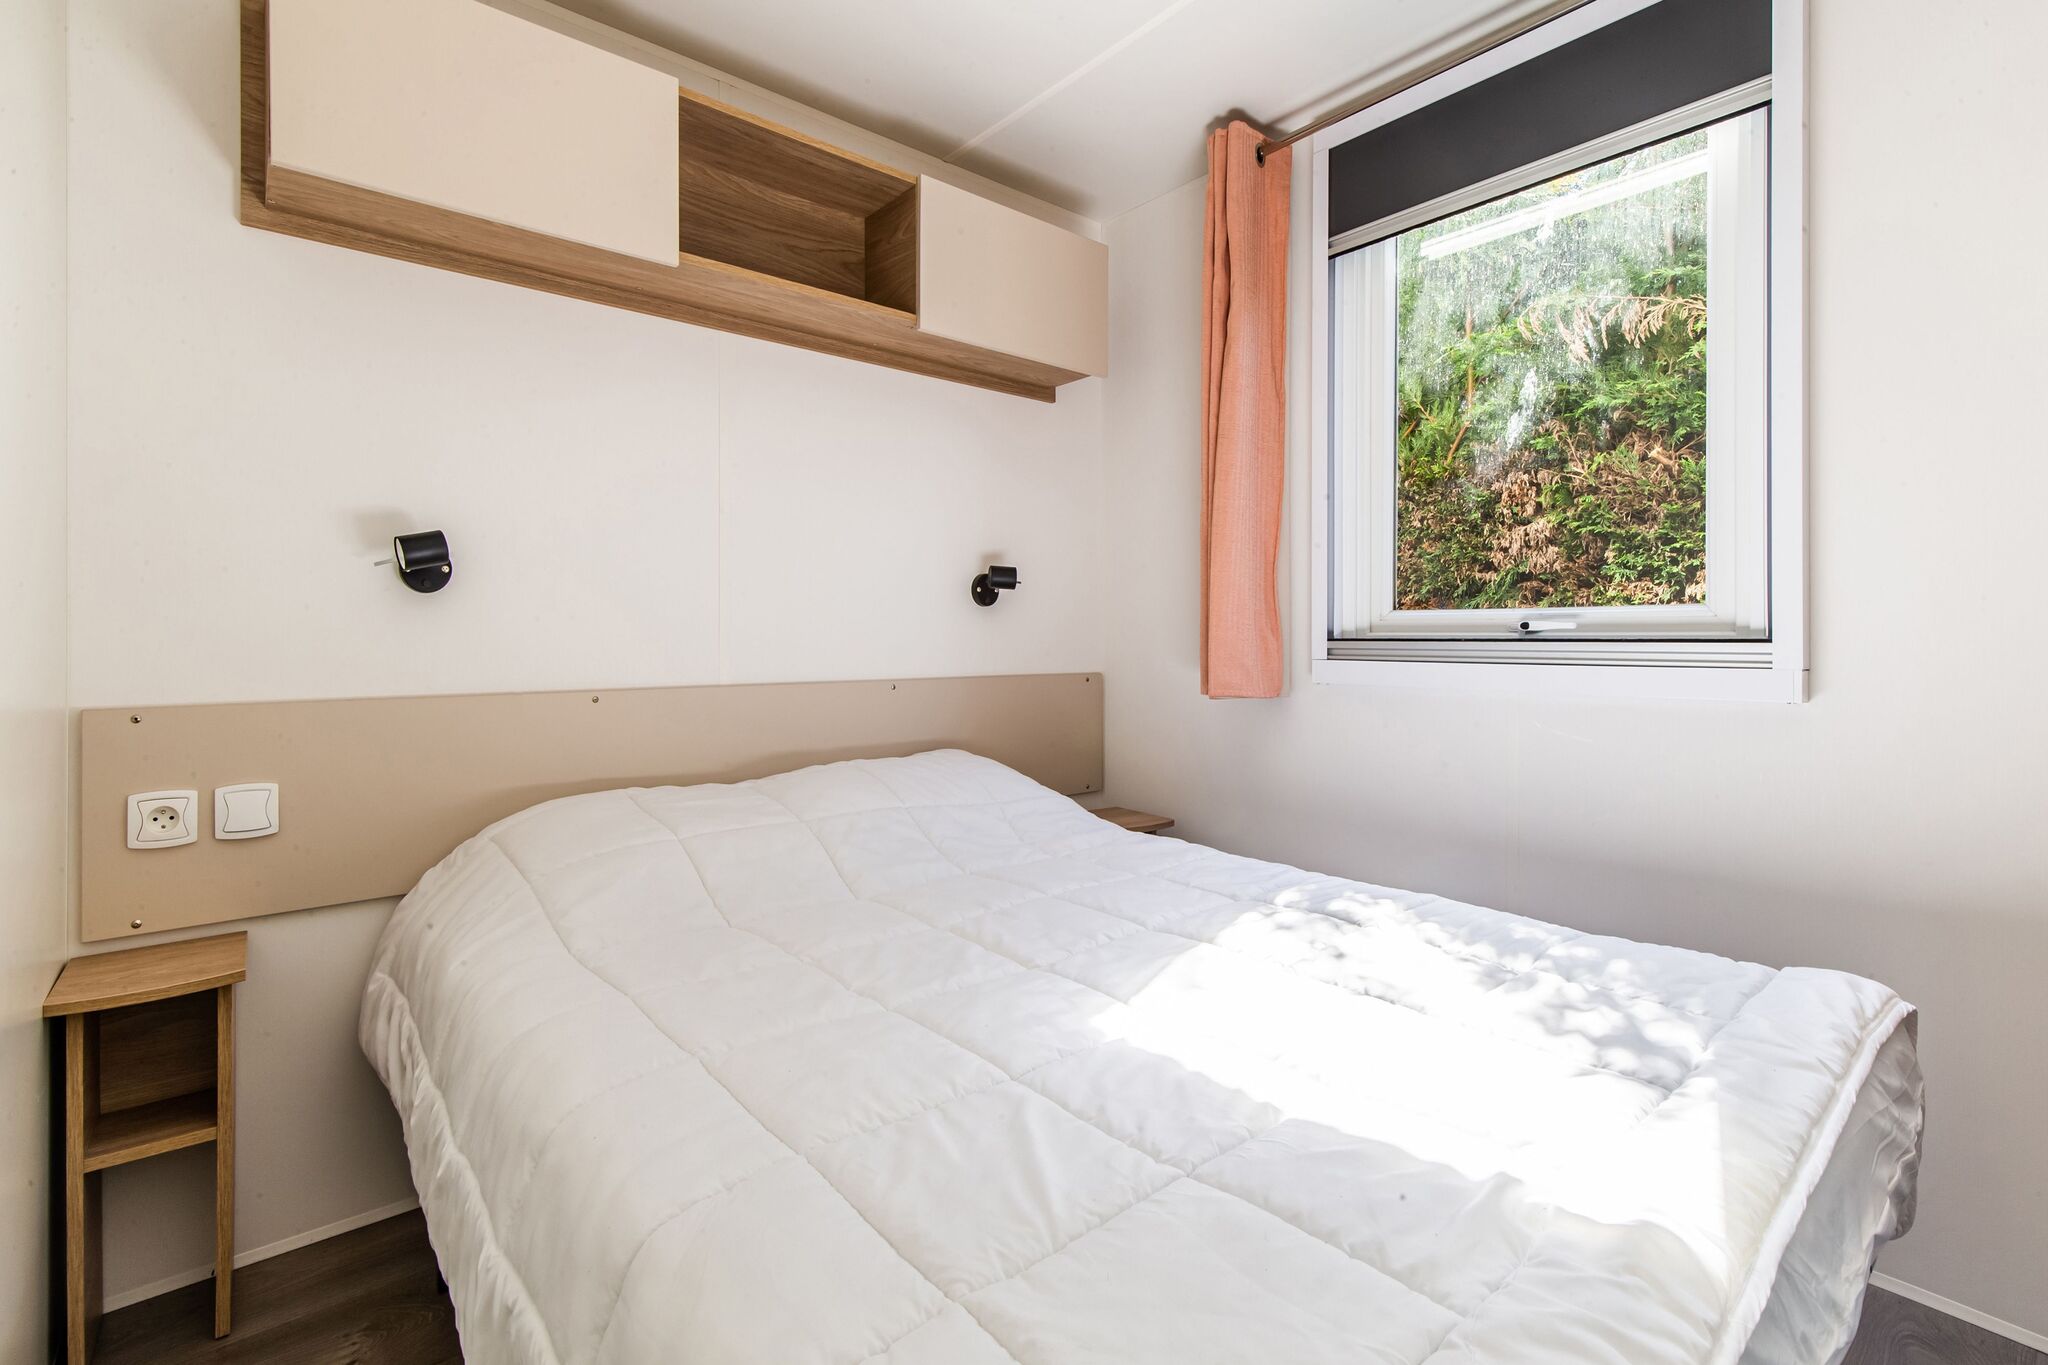 Maison de vacances confortable à Saint-Jean-de-Monts avec bain à remous